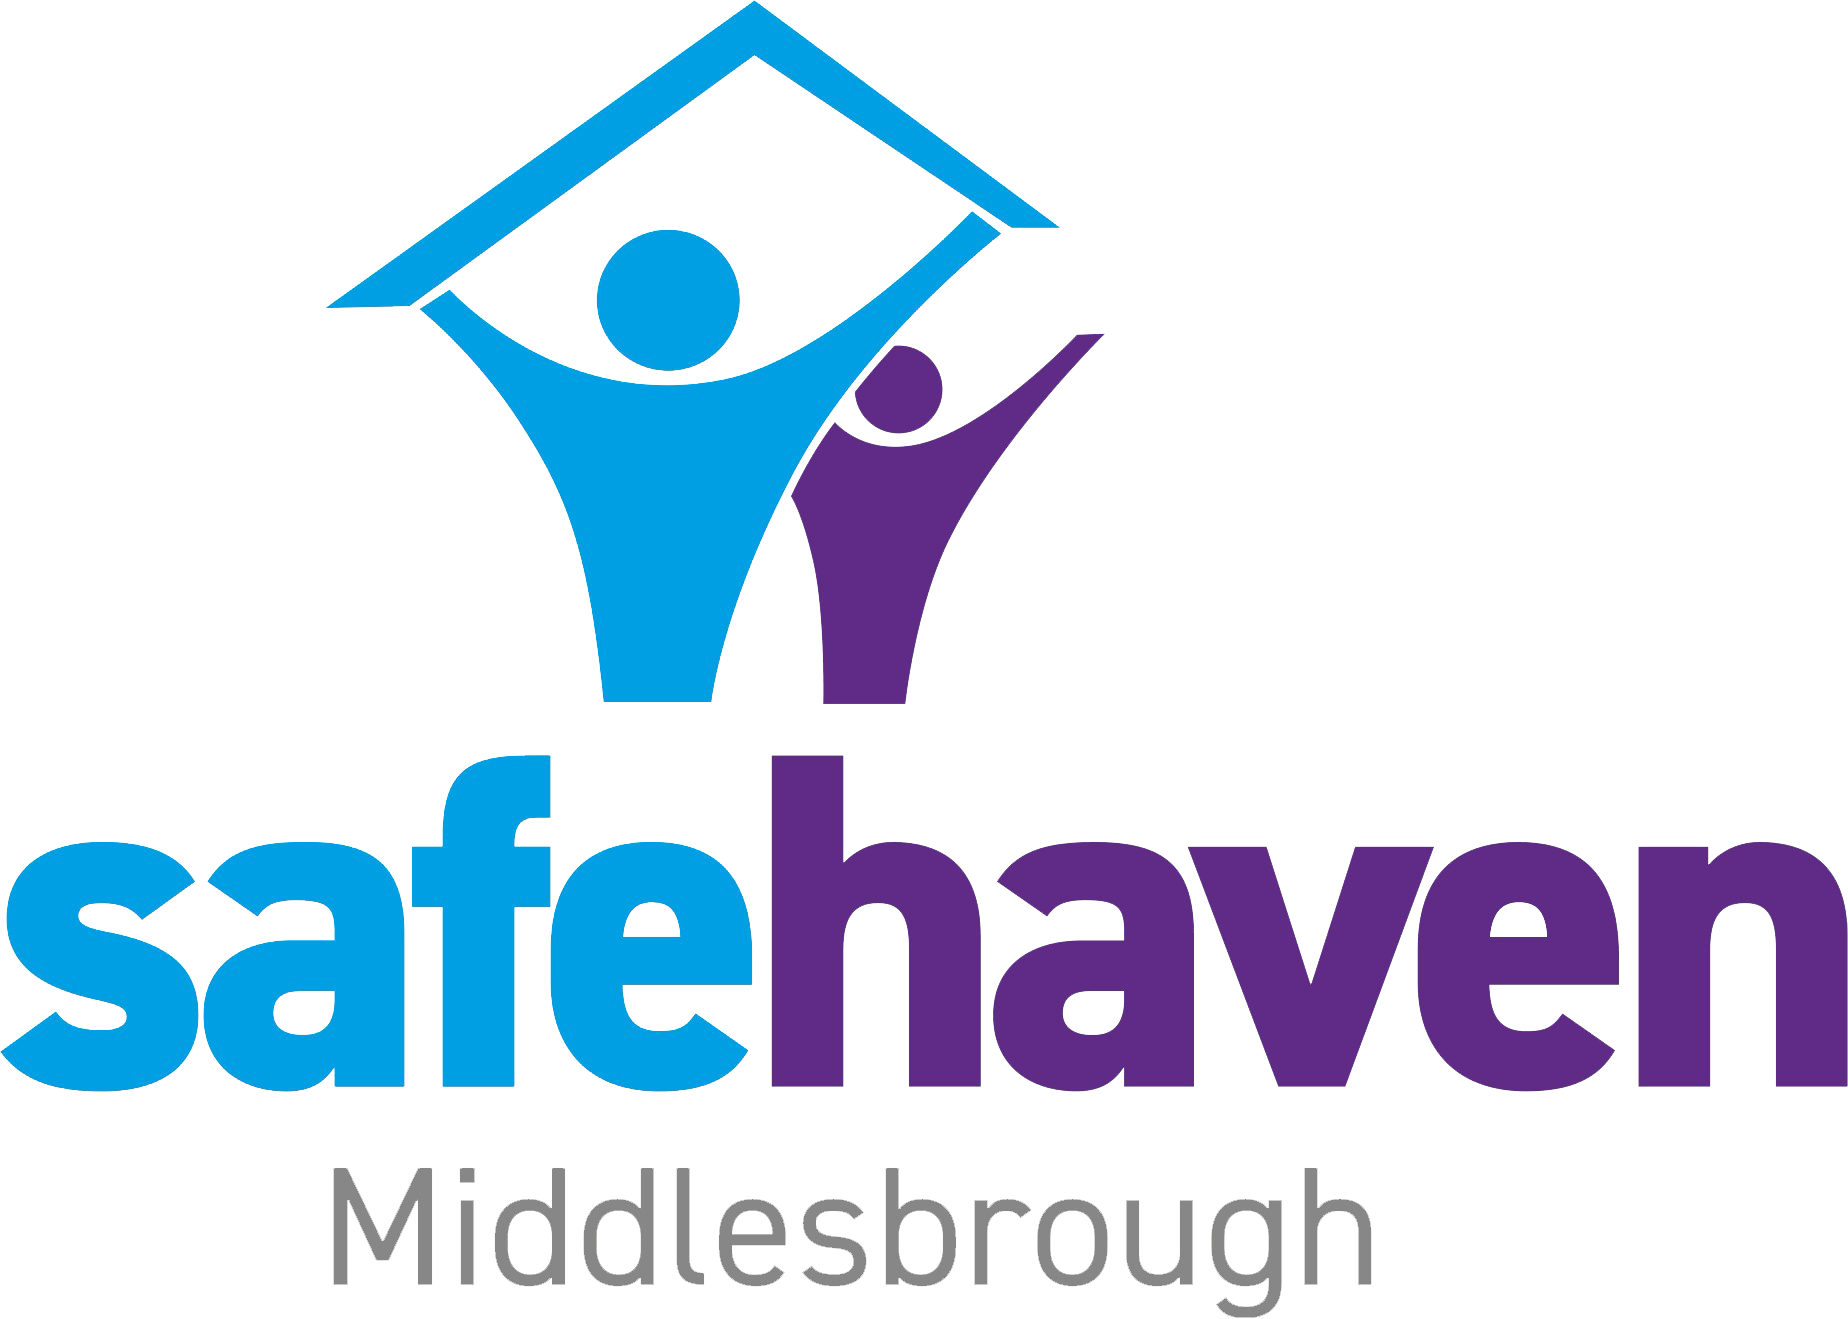 Safehaven Middlesbrough logo